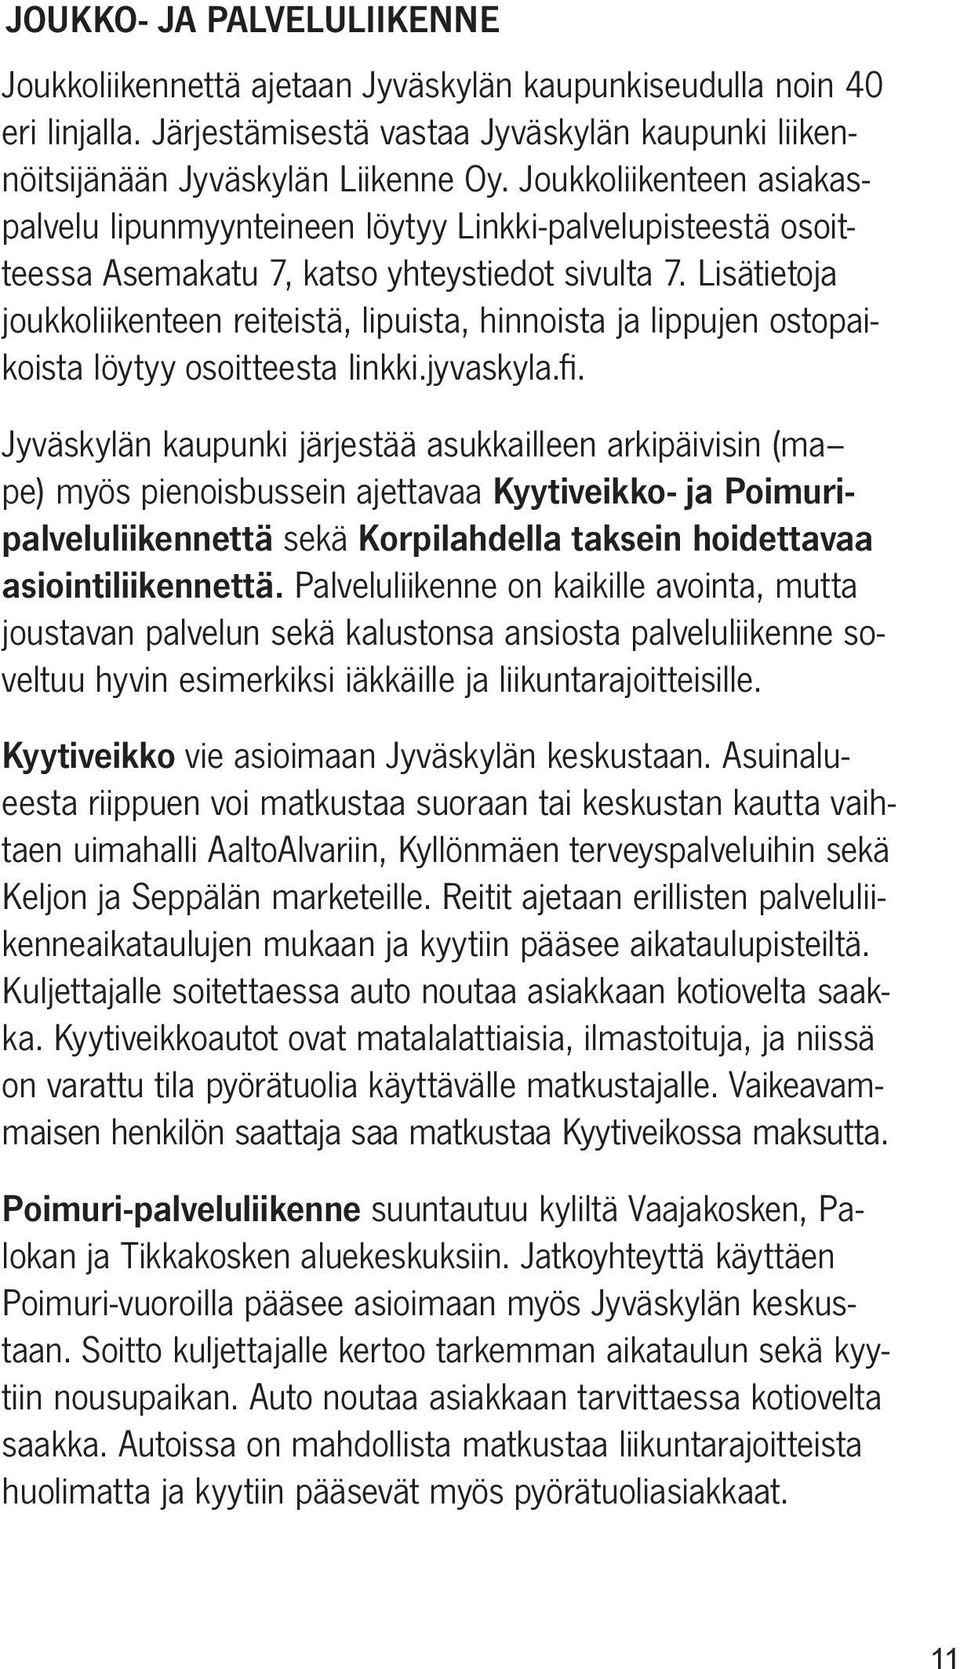 Lisätietoja joukkoliikenteen reiteistä, lipuista, hinnoista ja lippujen ostopaikoista löytyy osoitteesta linkki.jyvaskyla.fi.